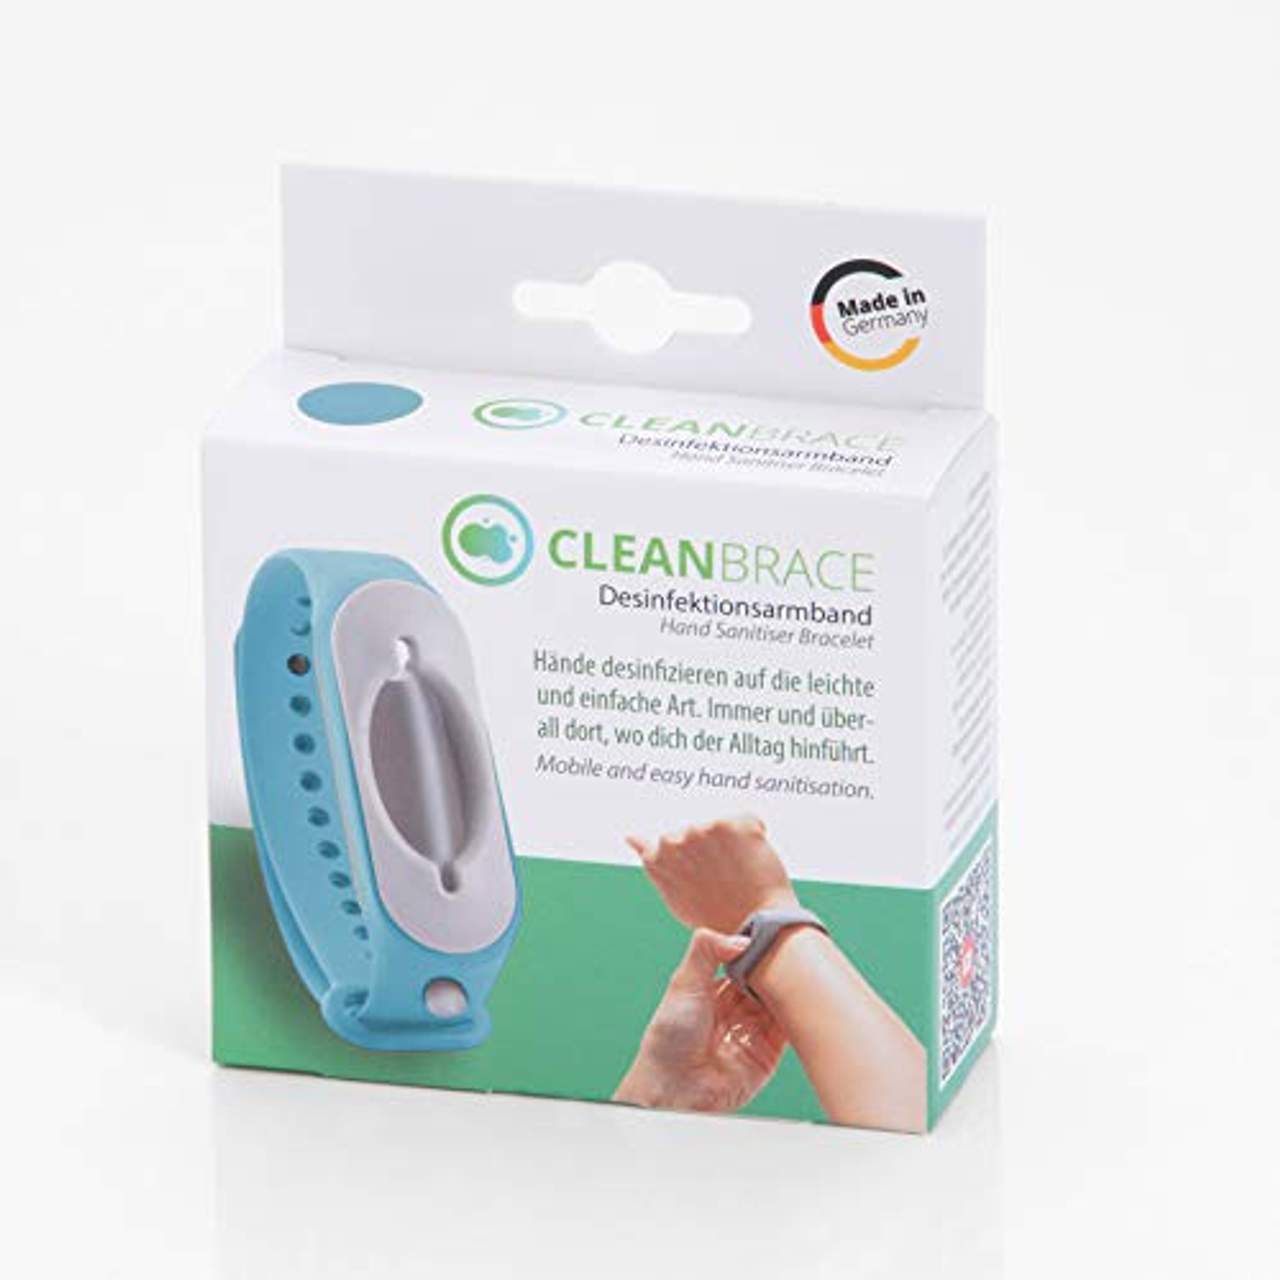 Cleanbrace Desinfektionsarmband 2.0 (blau)